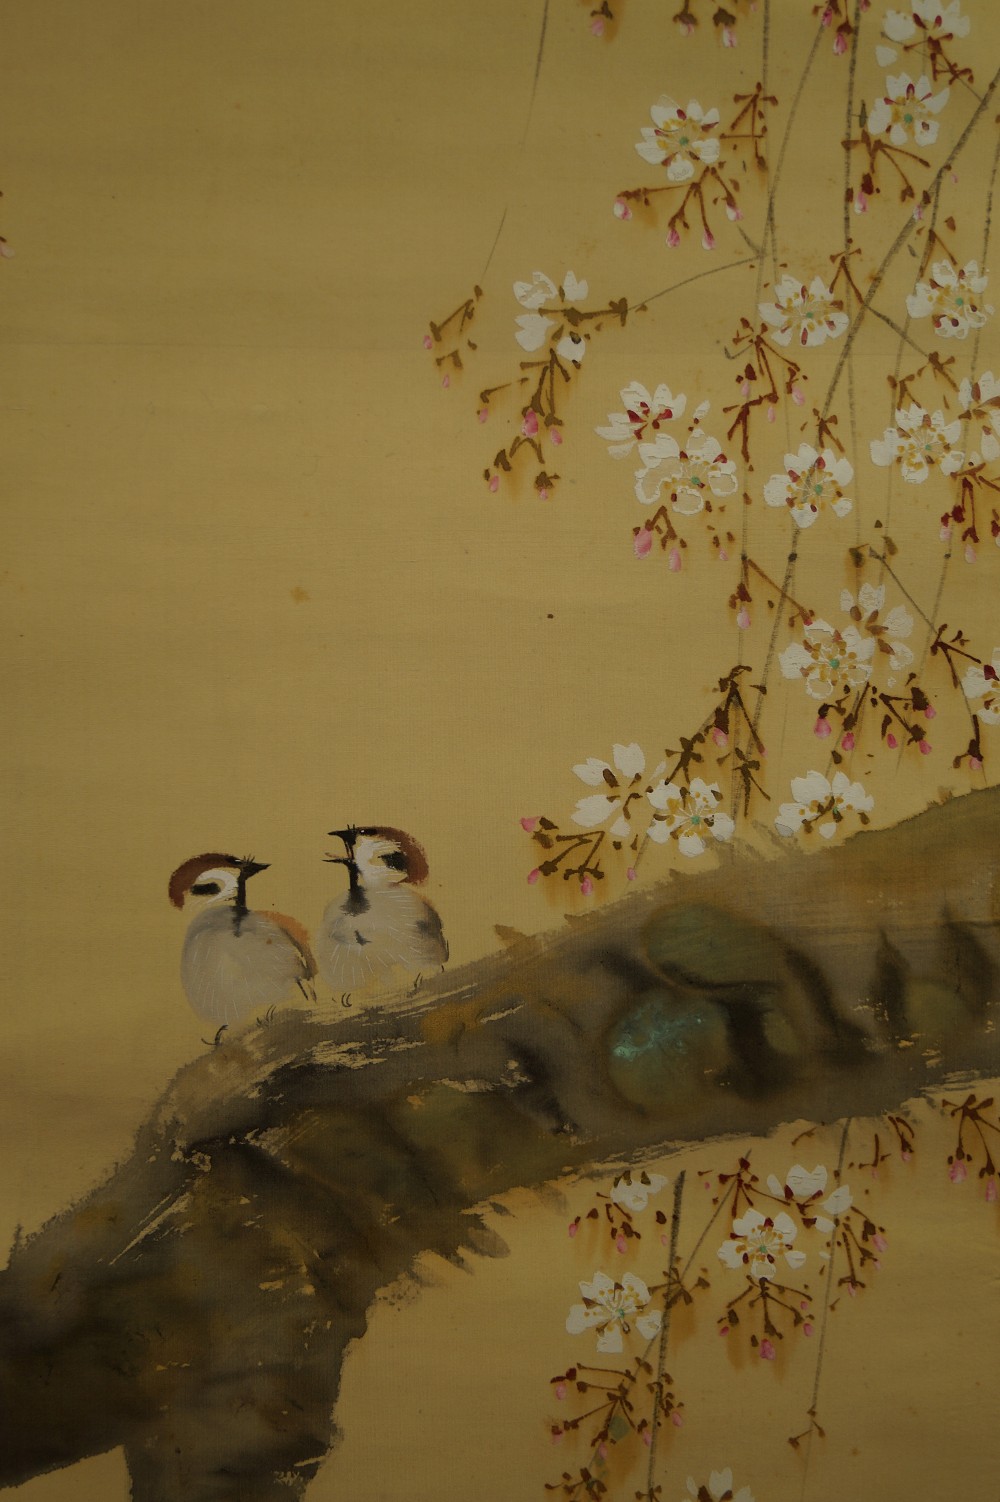 Zwei Spatzen auf dem Sakura Zweig - Japanisches Rollbild (Kakejiku, Kakemono)